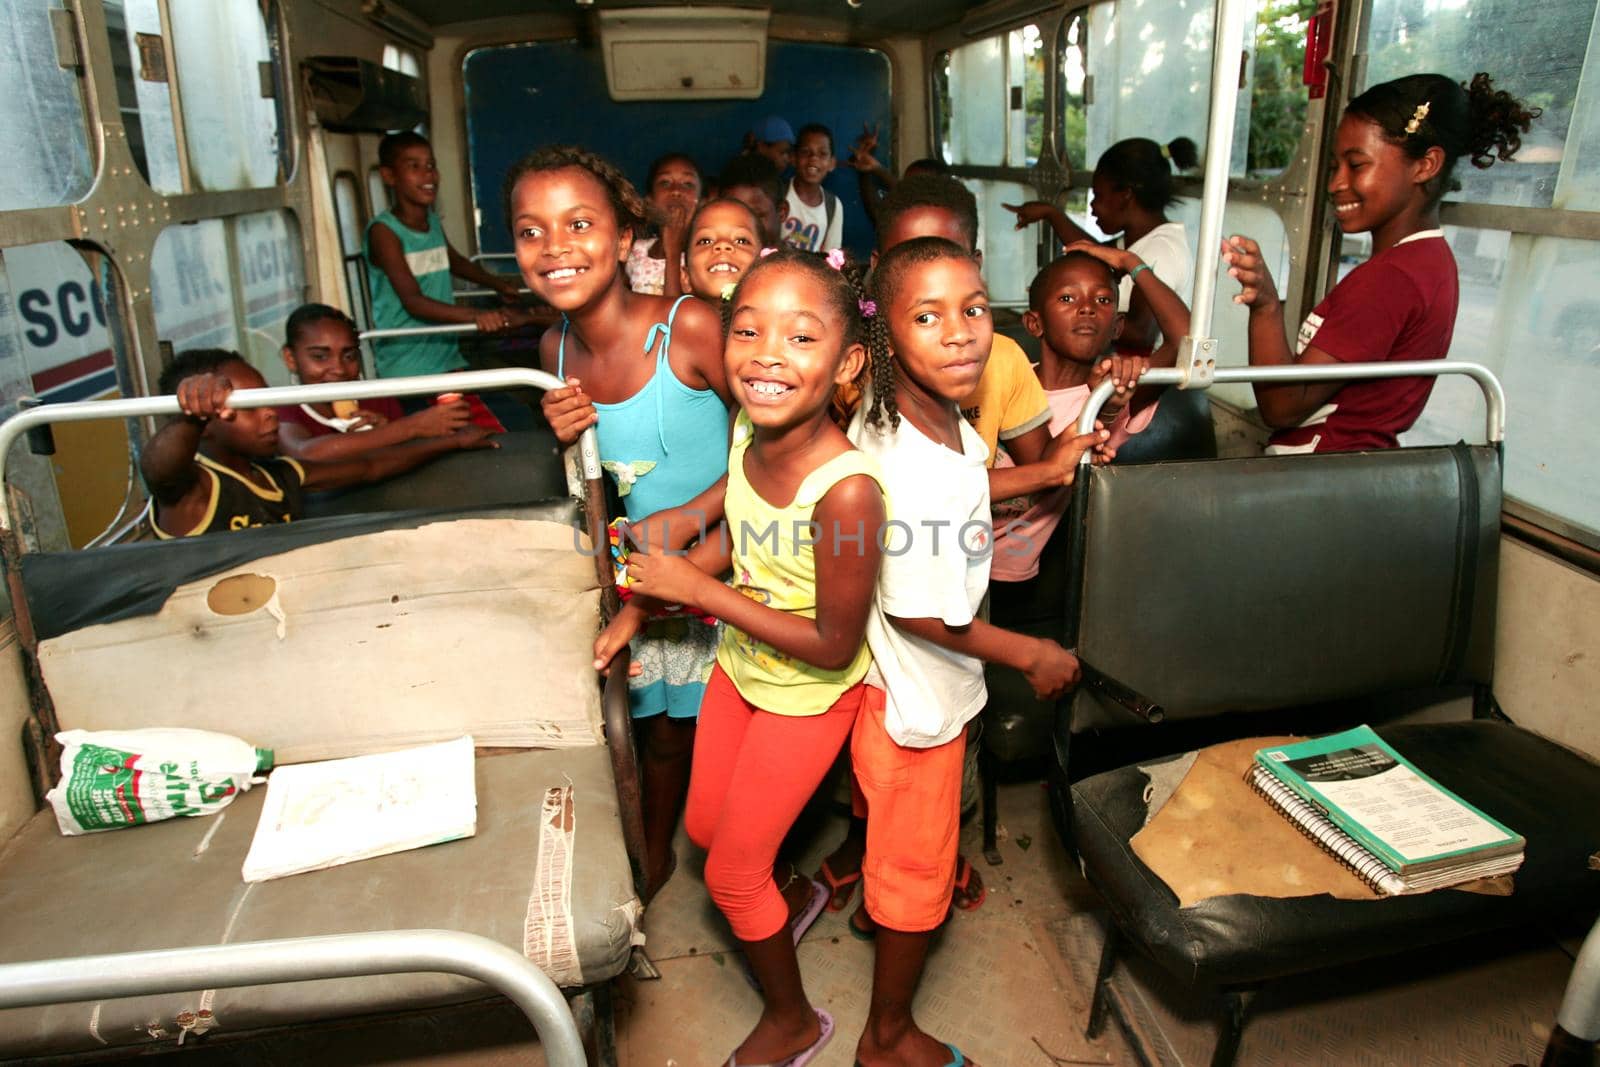 quilombola children in school transport by joasouza